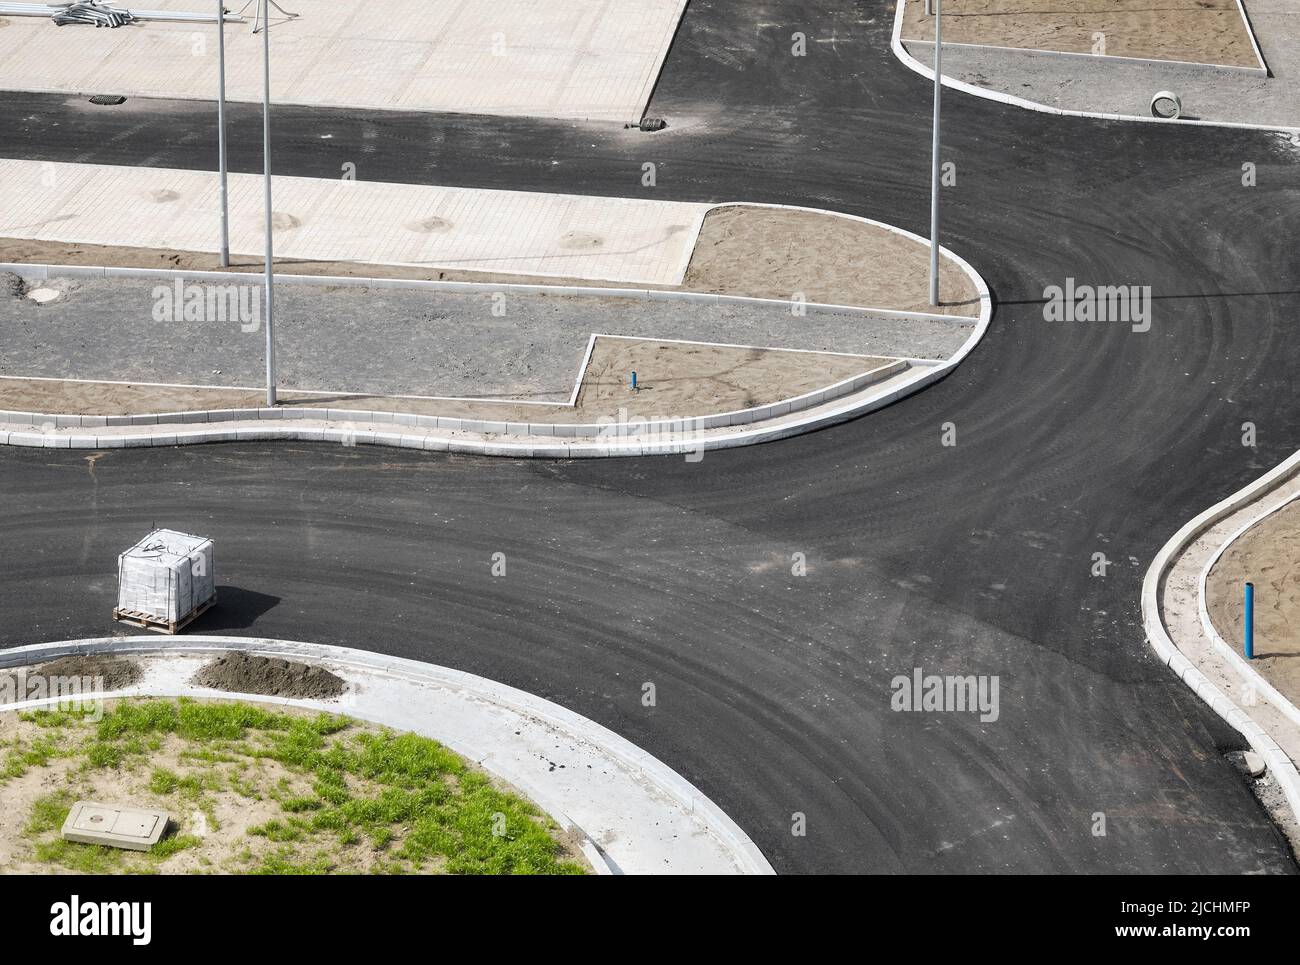 Vue aérienne de l'intersection et du parking récemment construits, chantier de construction. Banque D'Images